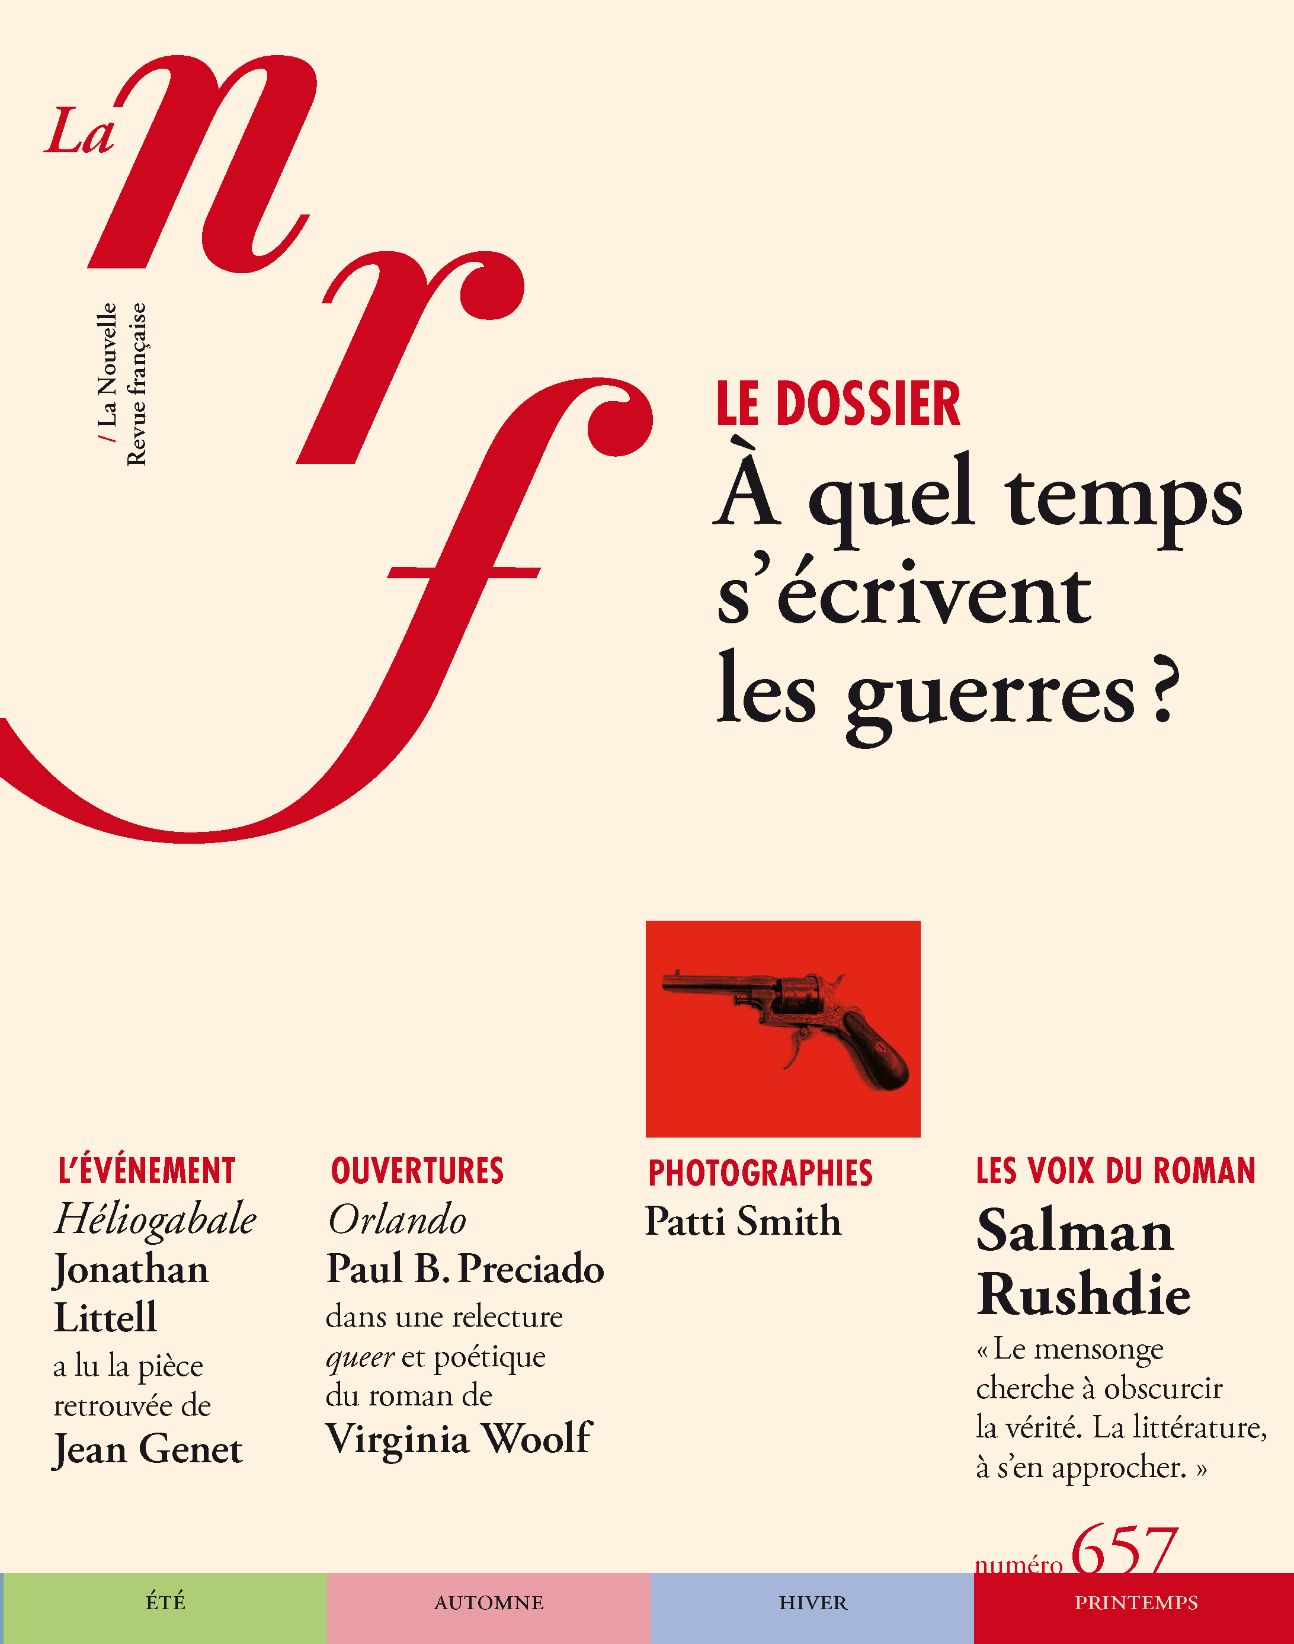 La Nouvelle Revue Française, n° 657